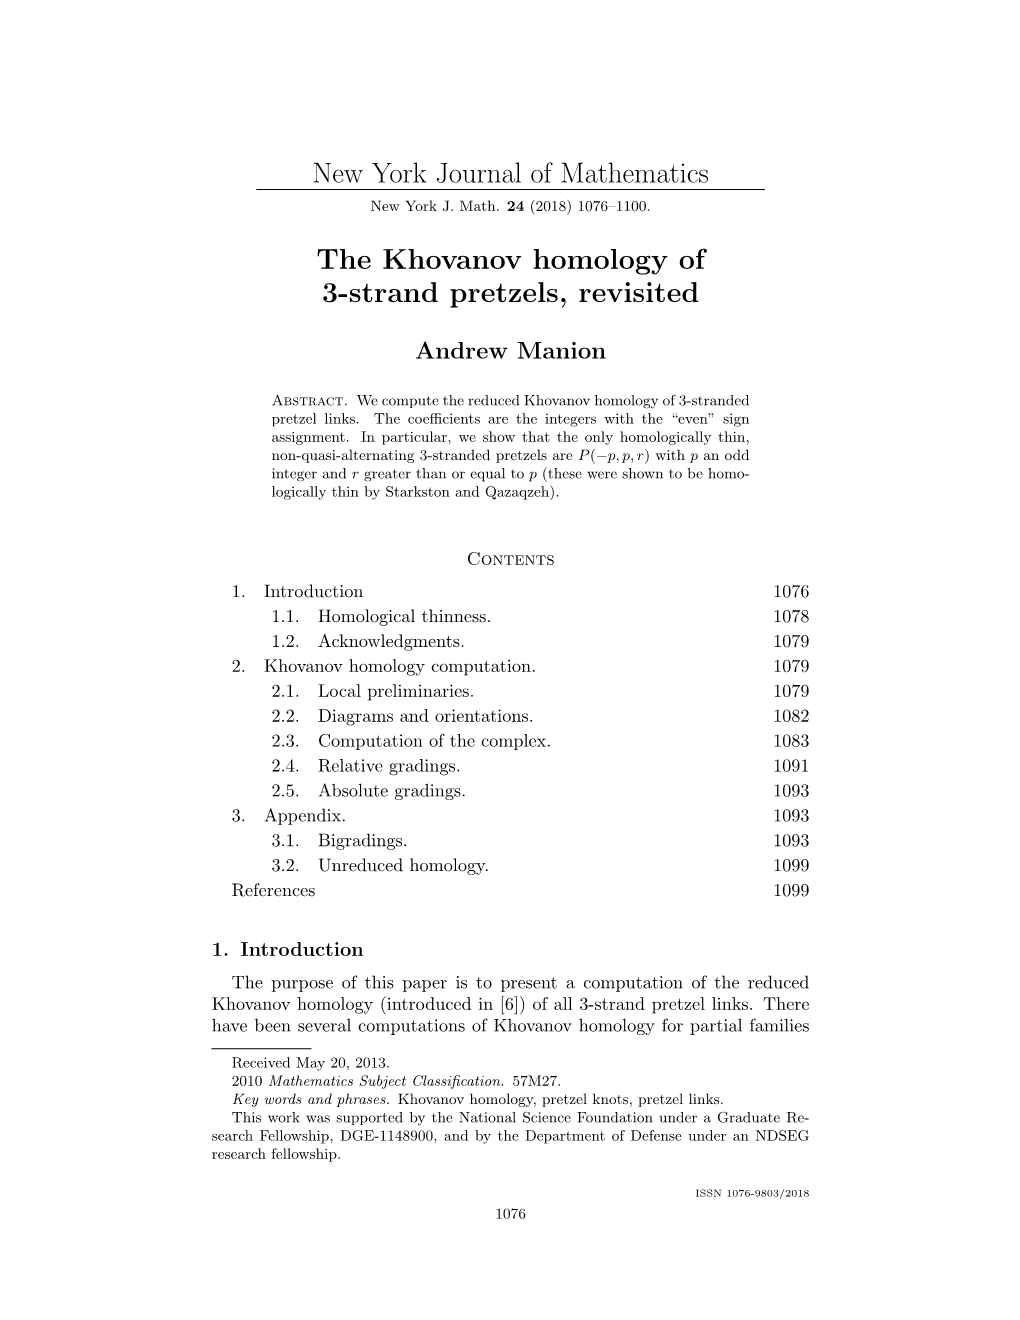 New York Journal of Mathematics the Khovanov Homology of 3-Strand